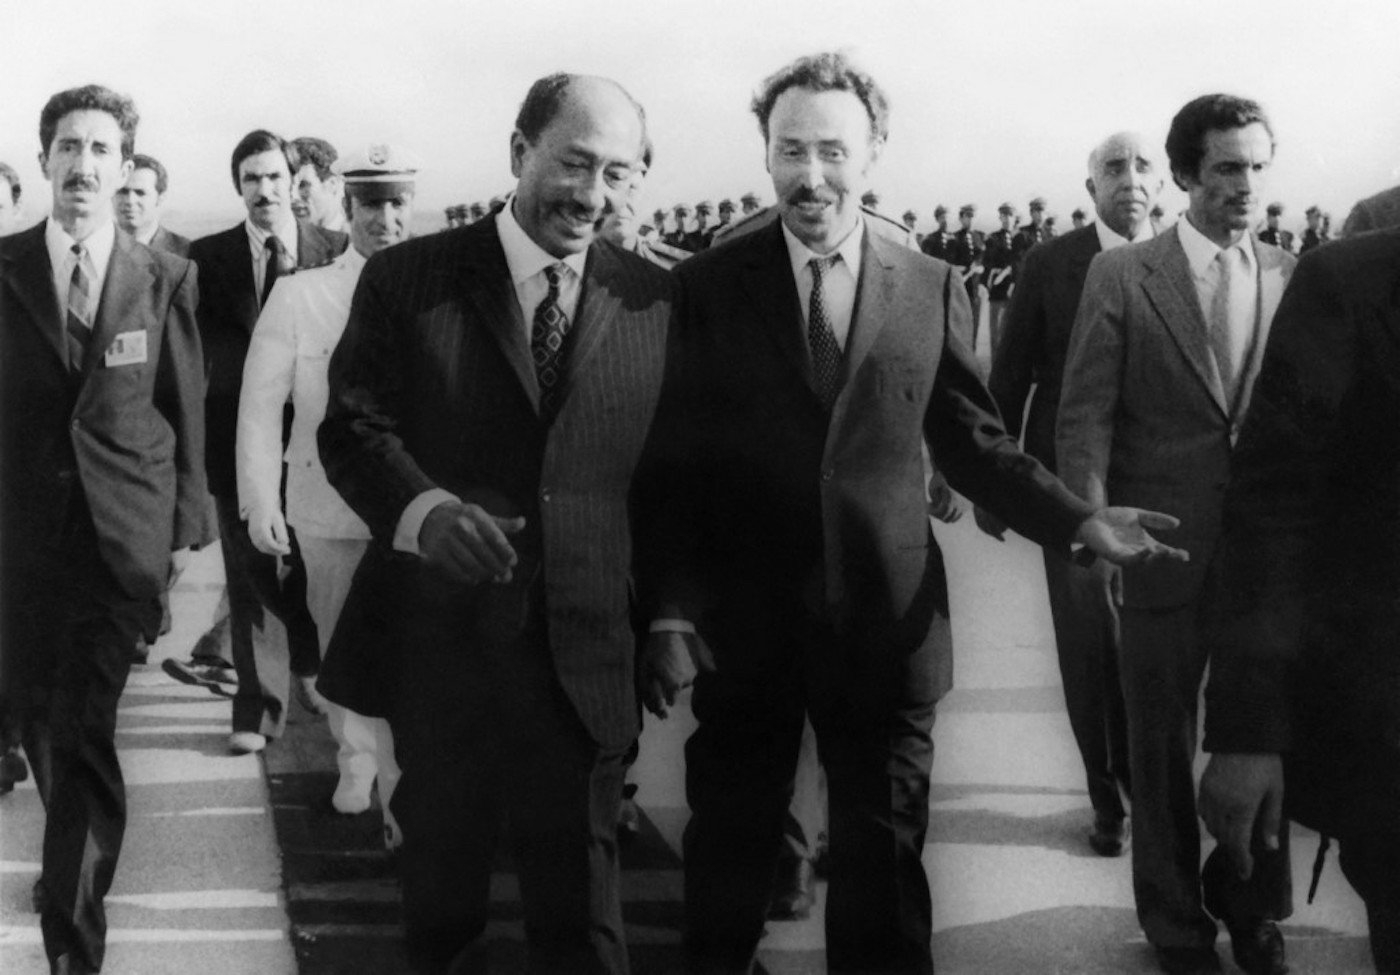 Le président algérien Houari Boumediene (à droite) accueille le président égyptien Anouar al-Sadate à son arrivée à l’aéroport d’Alger le 10 septembre 1973 pour la Conférence des pays non alignés au cours de laquelle les 75 pays présents se mettront d’accord pour privilégier les questions de développement plutôt que la recherche d’une reconnaissance sur la scène politique internationale. (AFP)